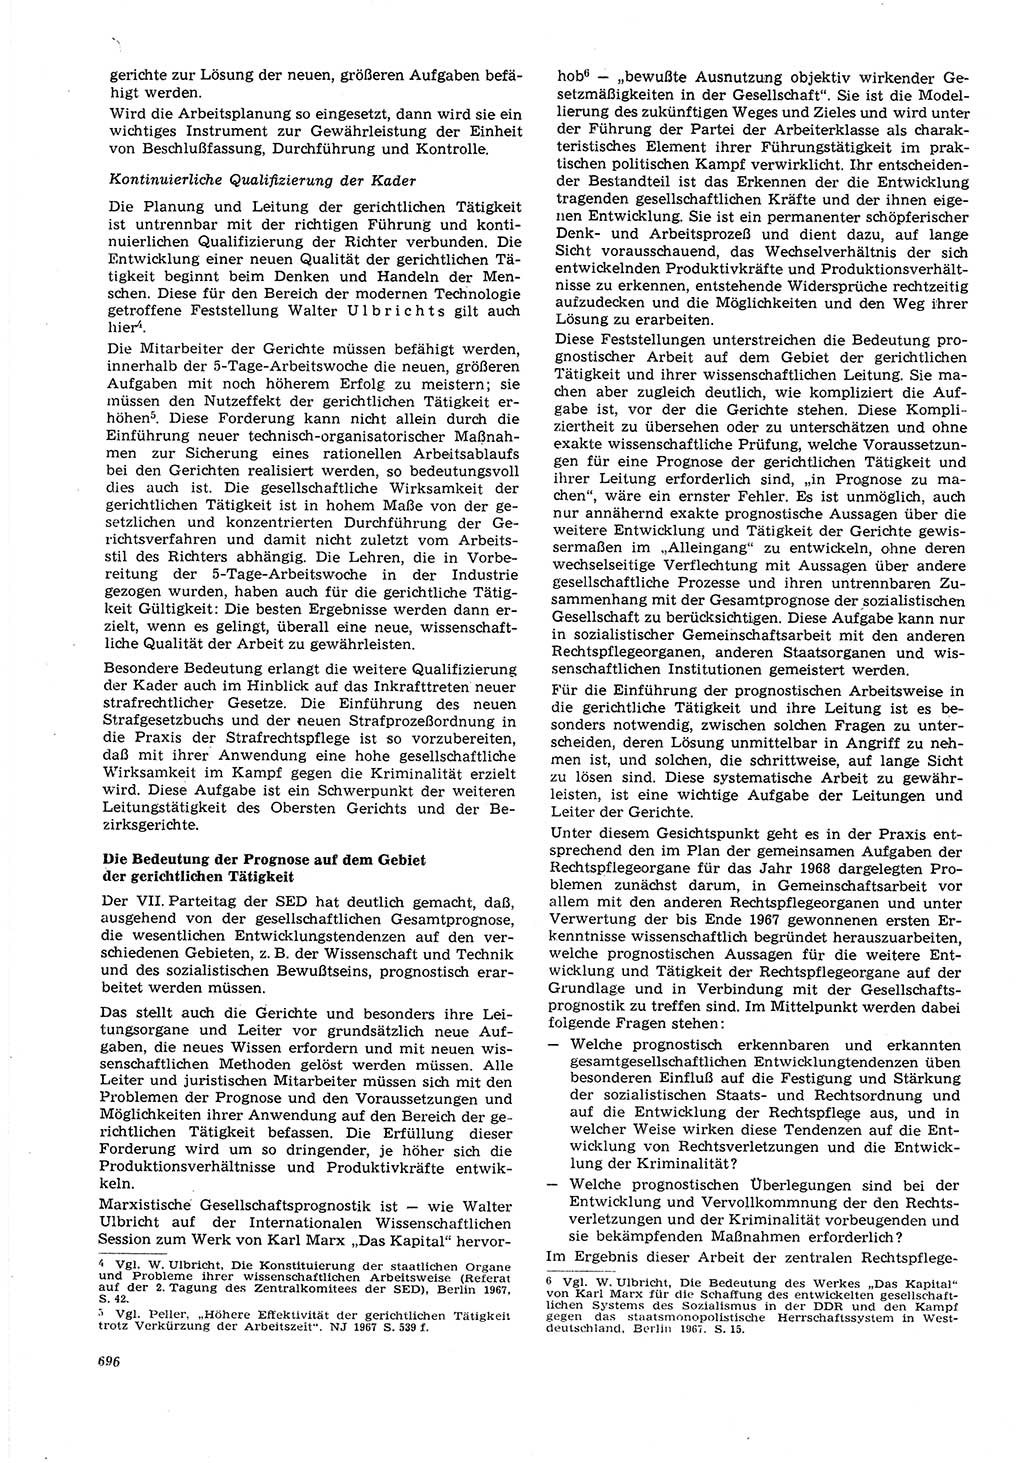 Neue Justiz (NJ), Zeitschrift für Recht und Rechtswissenschaft [Deutsche Demokratische Republik (DDR)], 21. Jahrgang 1967, Seite 696 (NJ DDR 1967, S. 696)